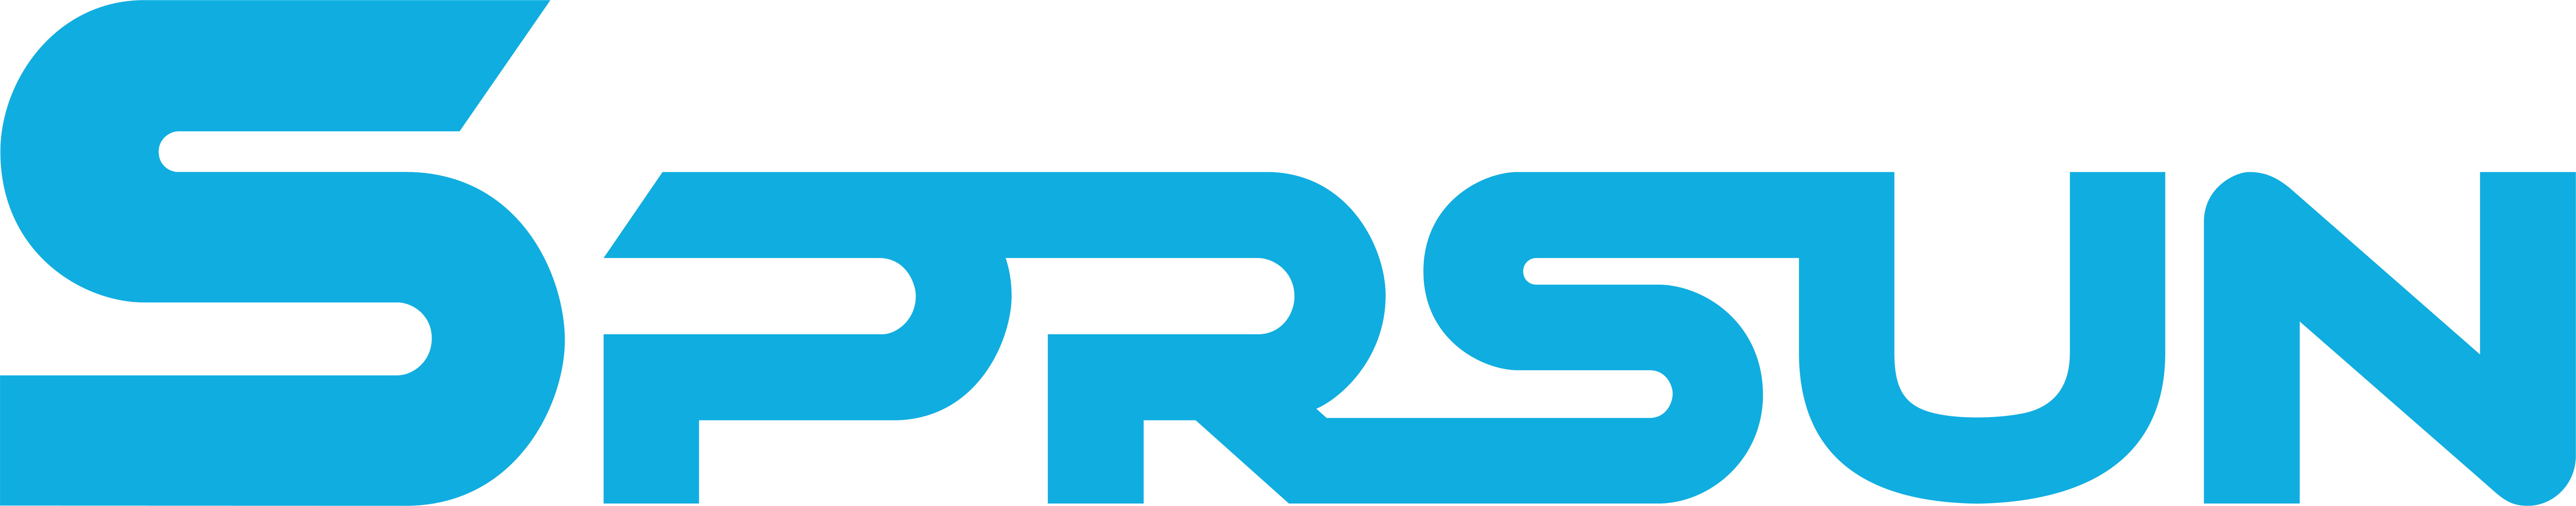 logo SPRSUN